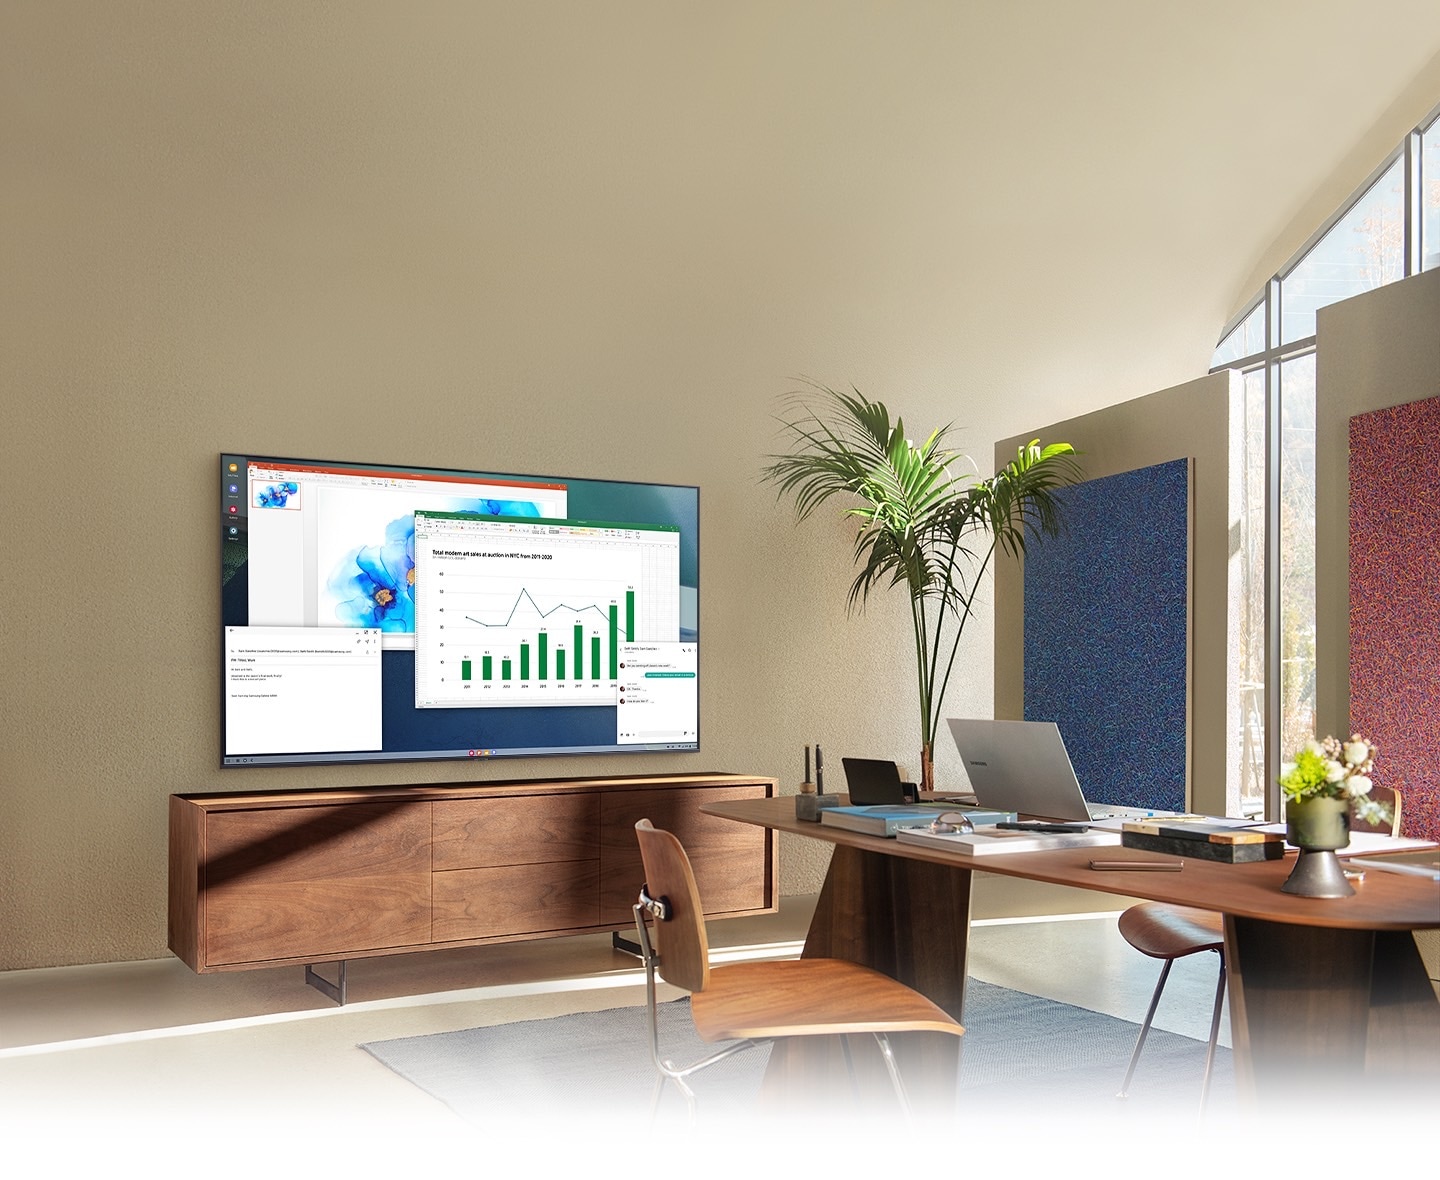 Trong phòng khách văn phòng, màn hình TV hiển thị tính năng PC on TV, cho phép TV ở nhà kết nối với PC văn phòng.